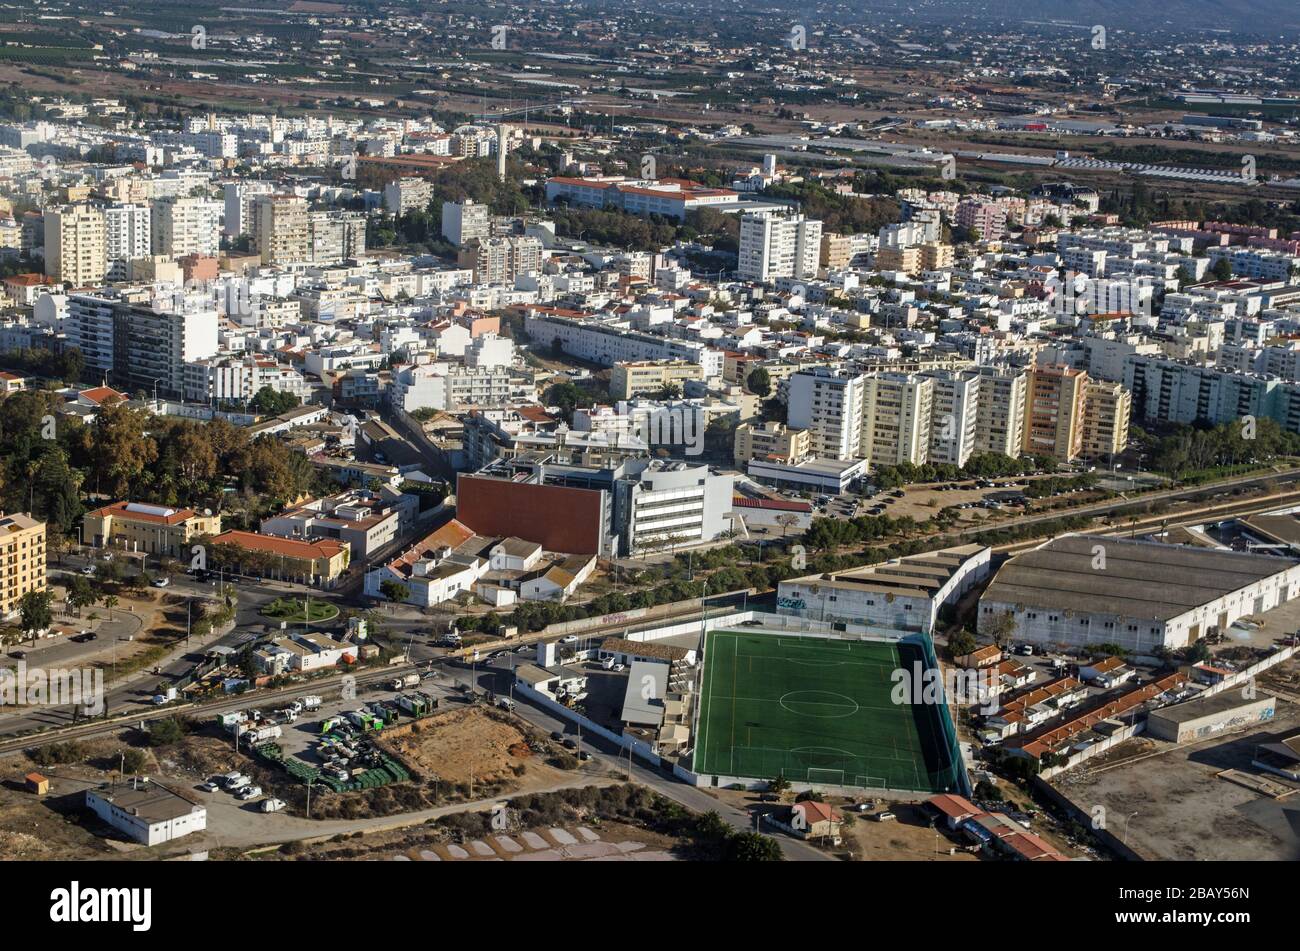 Luftbild von Faro an der Algarveküste Portugals mit der Escola de Futebol, Fußballschule im Vordergrund. Stockfoto